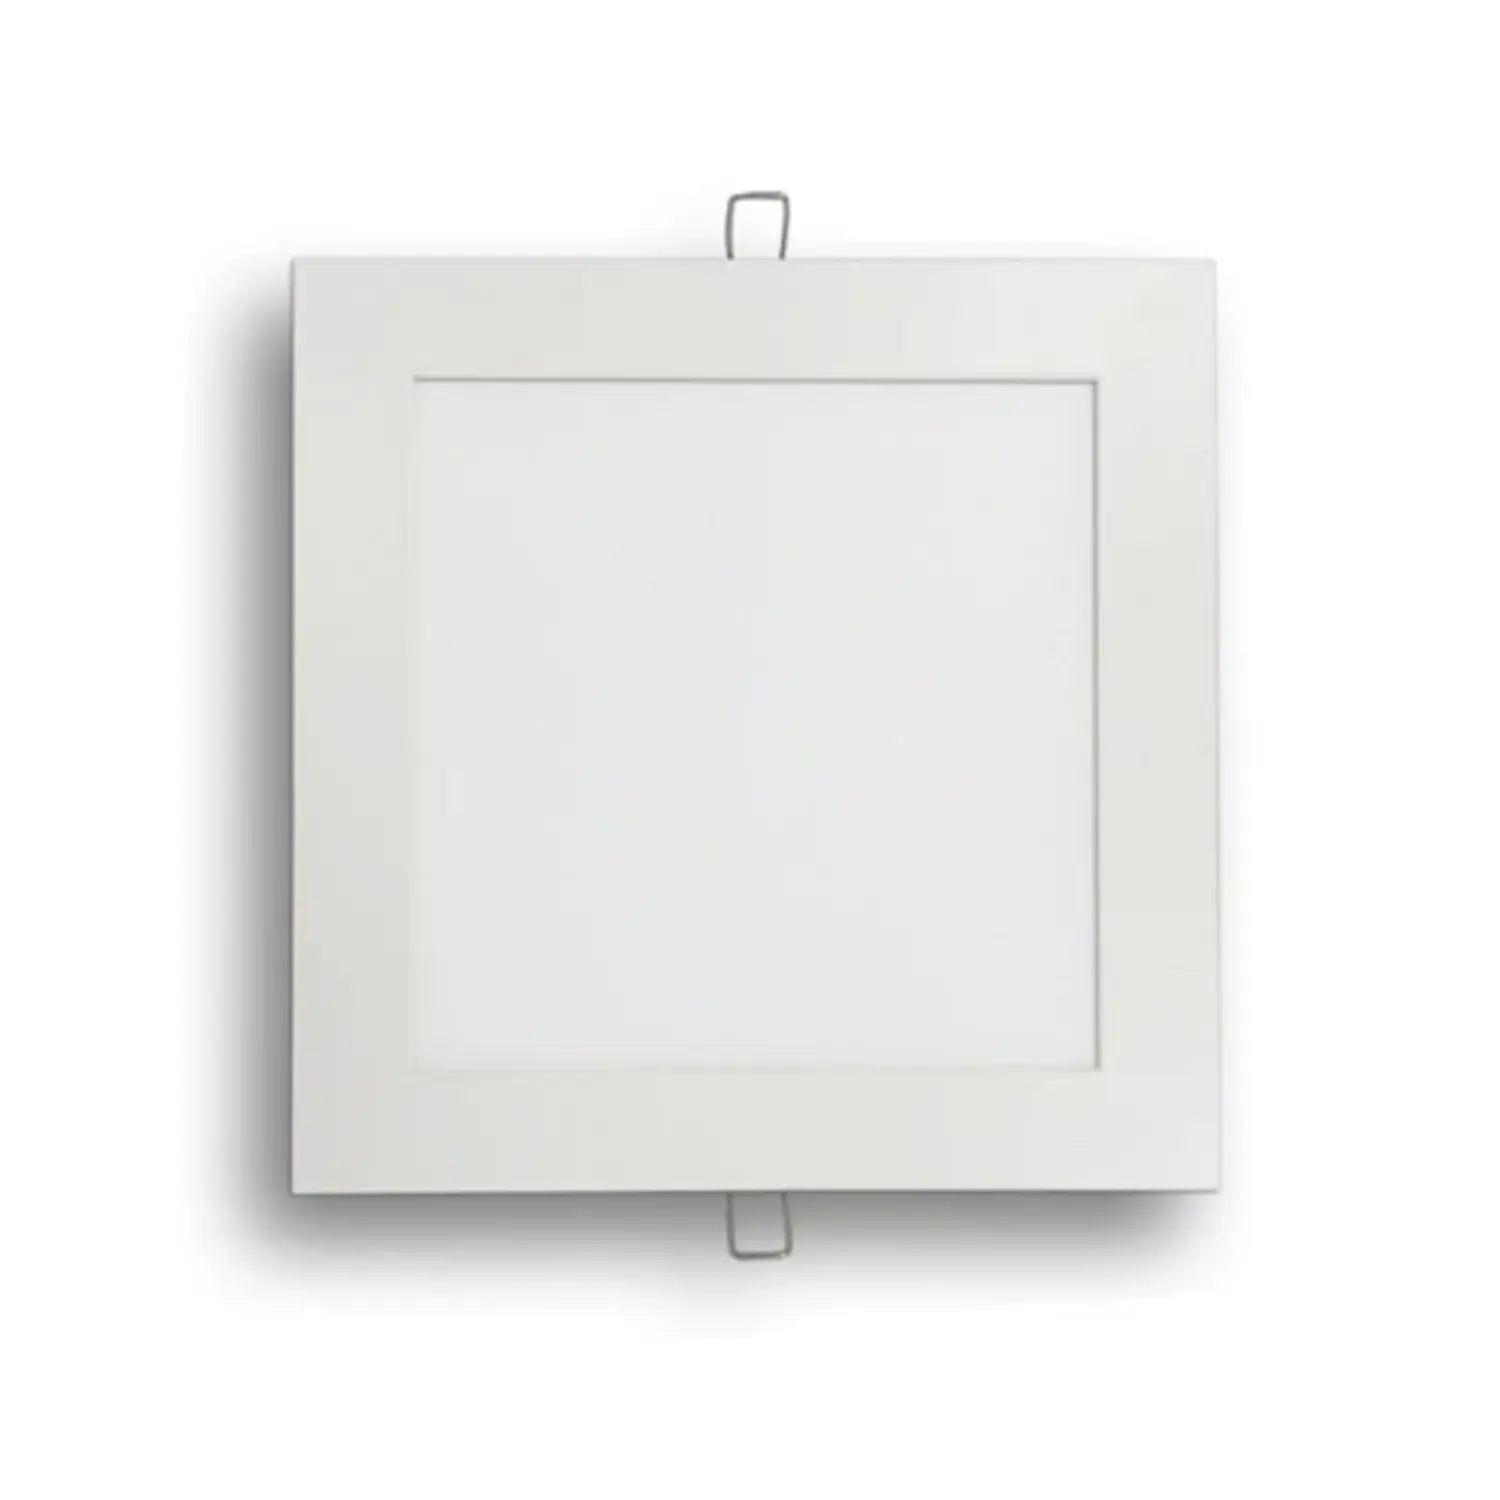 immagine del prodotto pannello led slim faretto incasso 18 watt bianco naturale quadrato